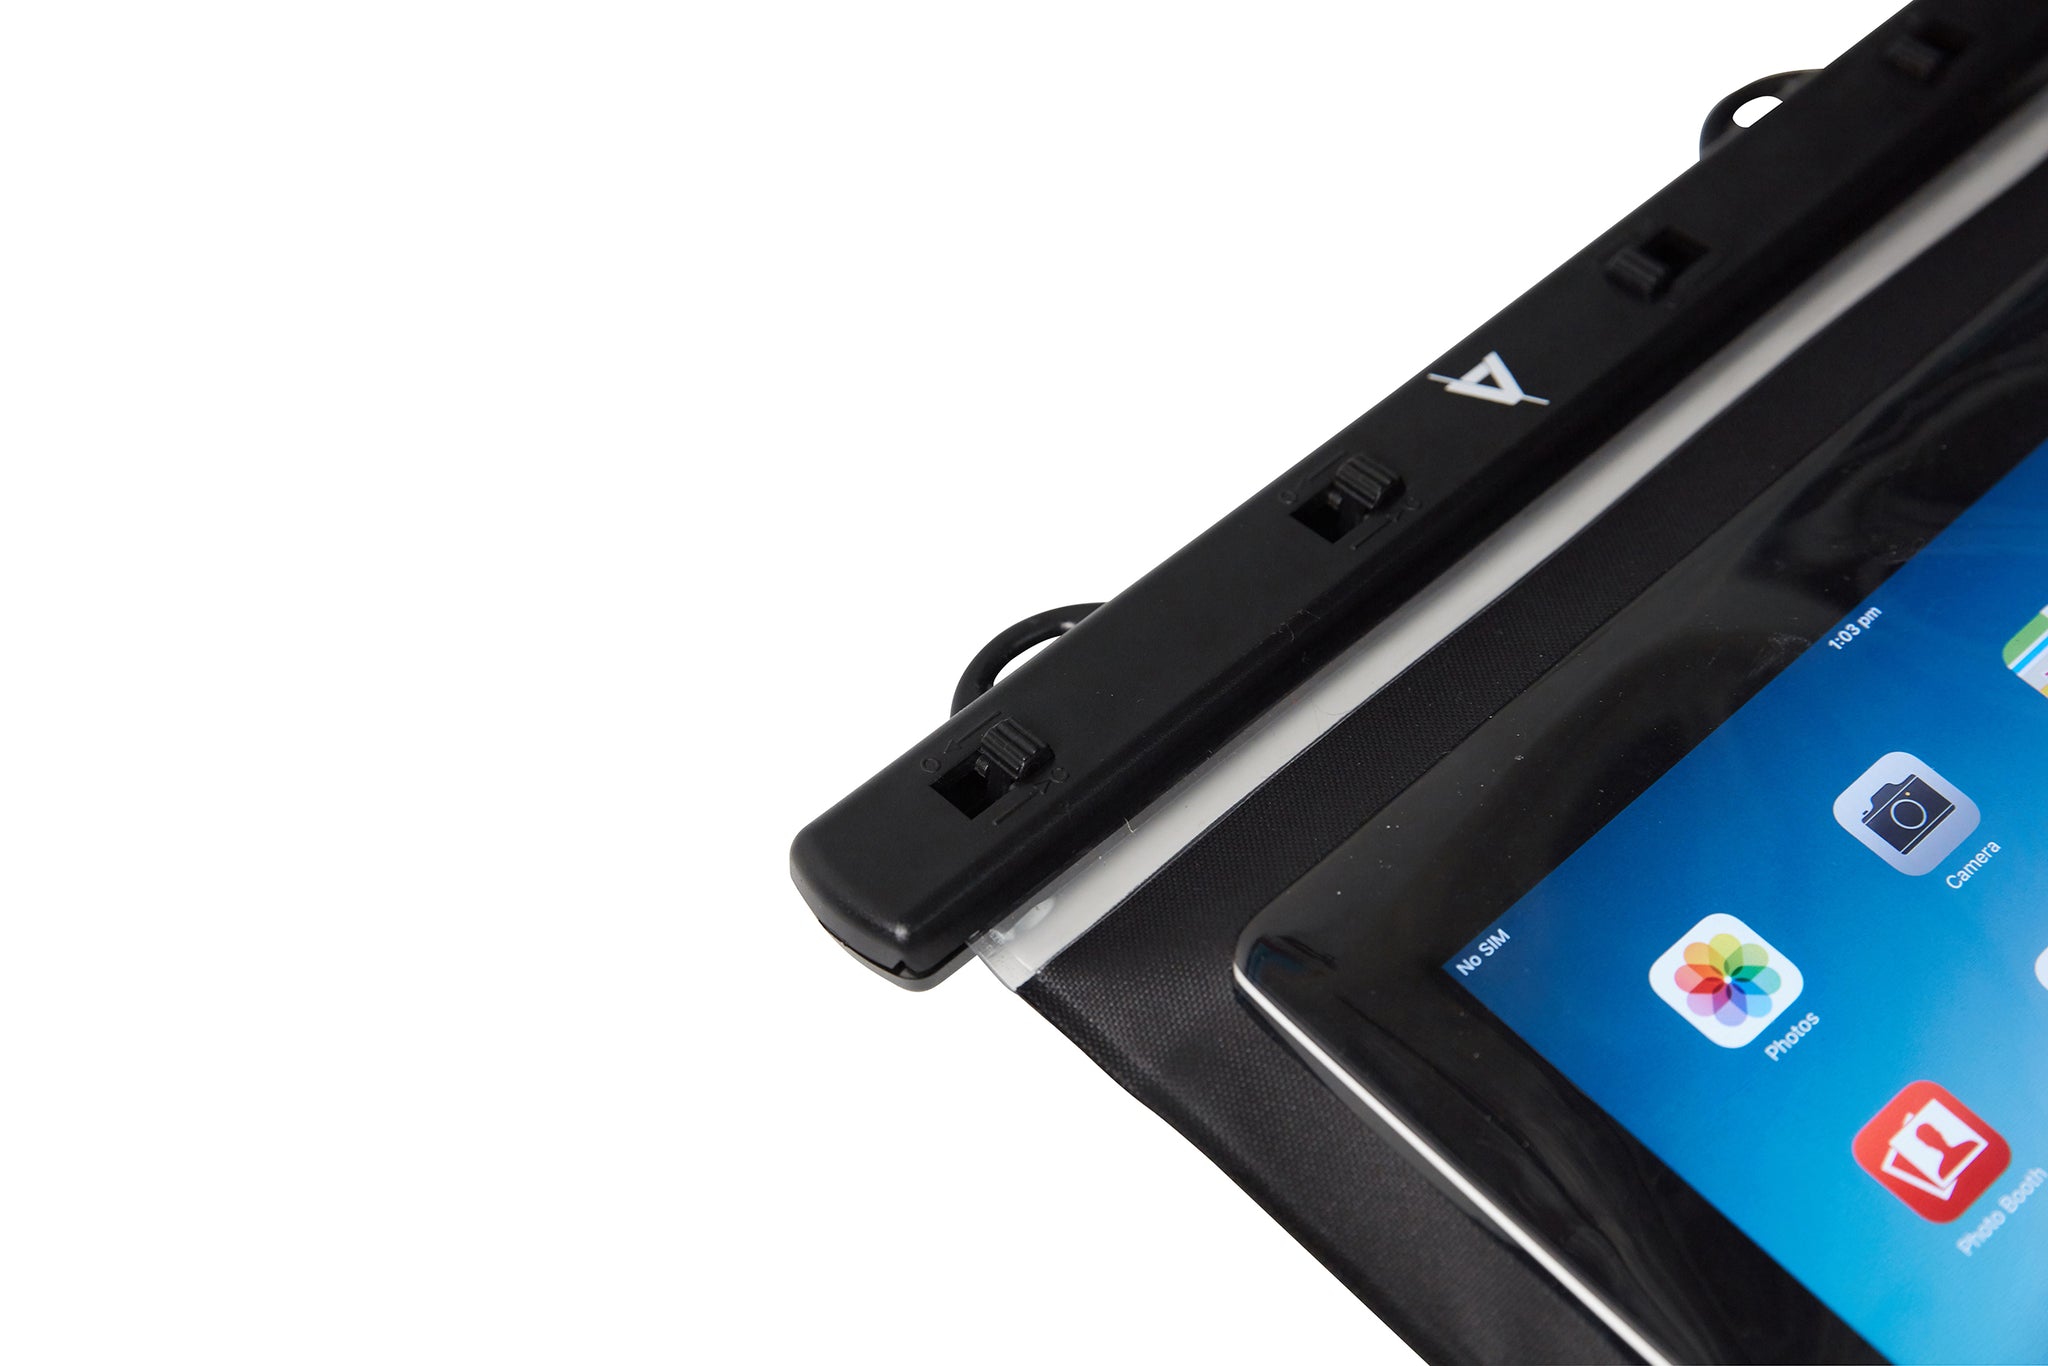 Waterproof Tablet Case Black